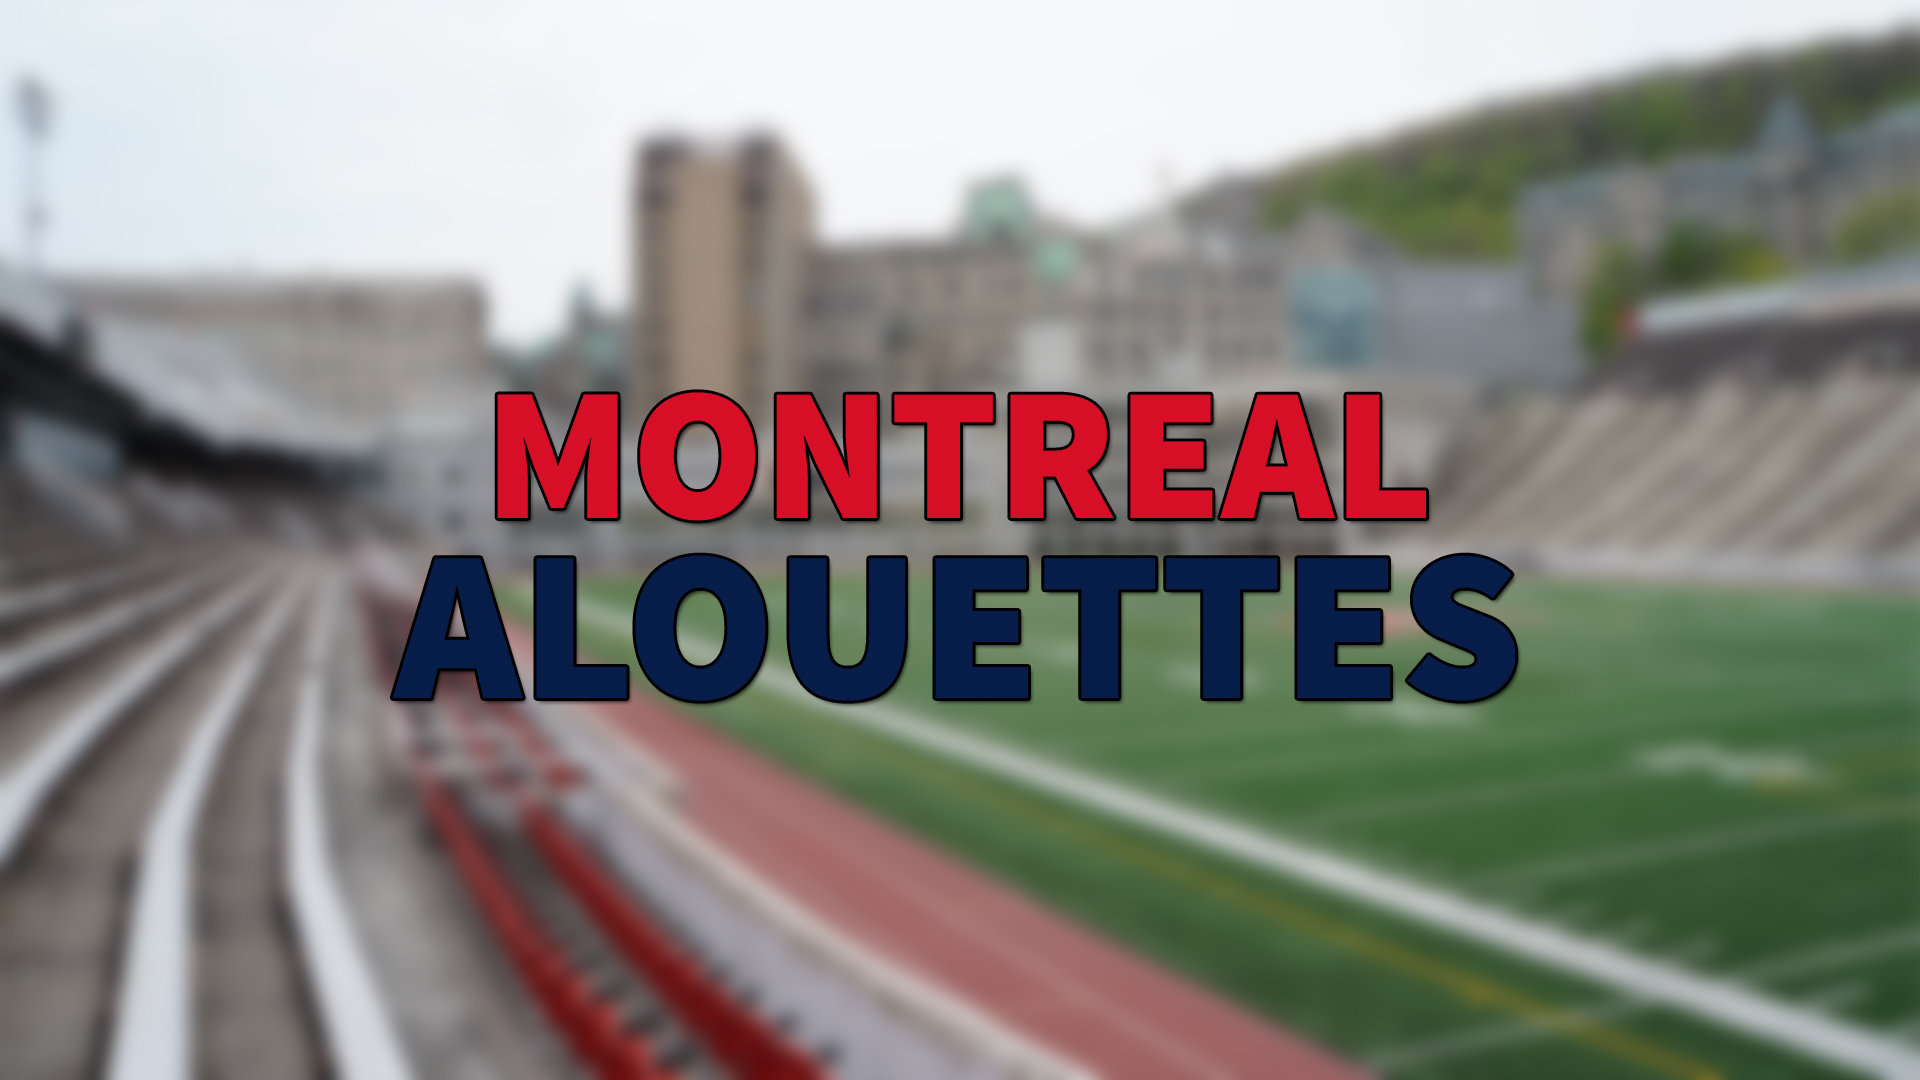 Montreal Alouettes 3 Oyuncuyu Kadrosuna Kattı | Korumalı Futbol Türkiye